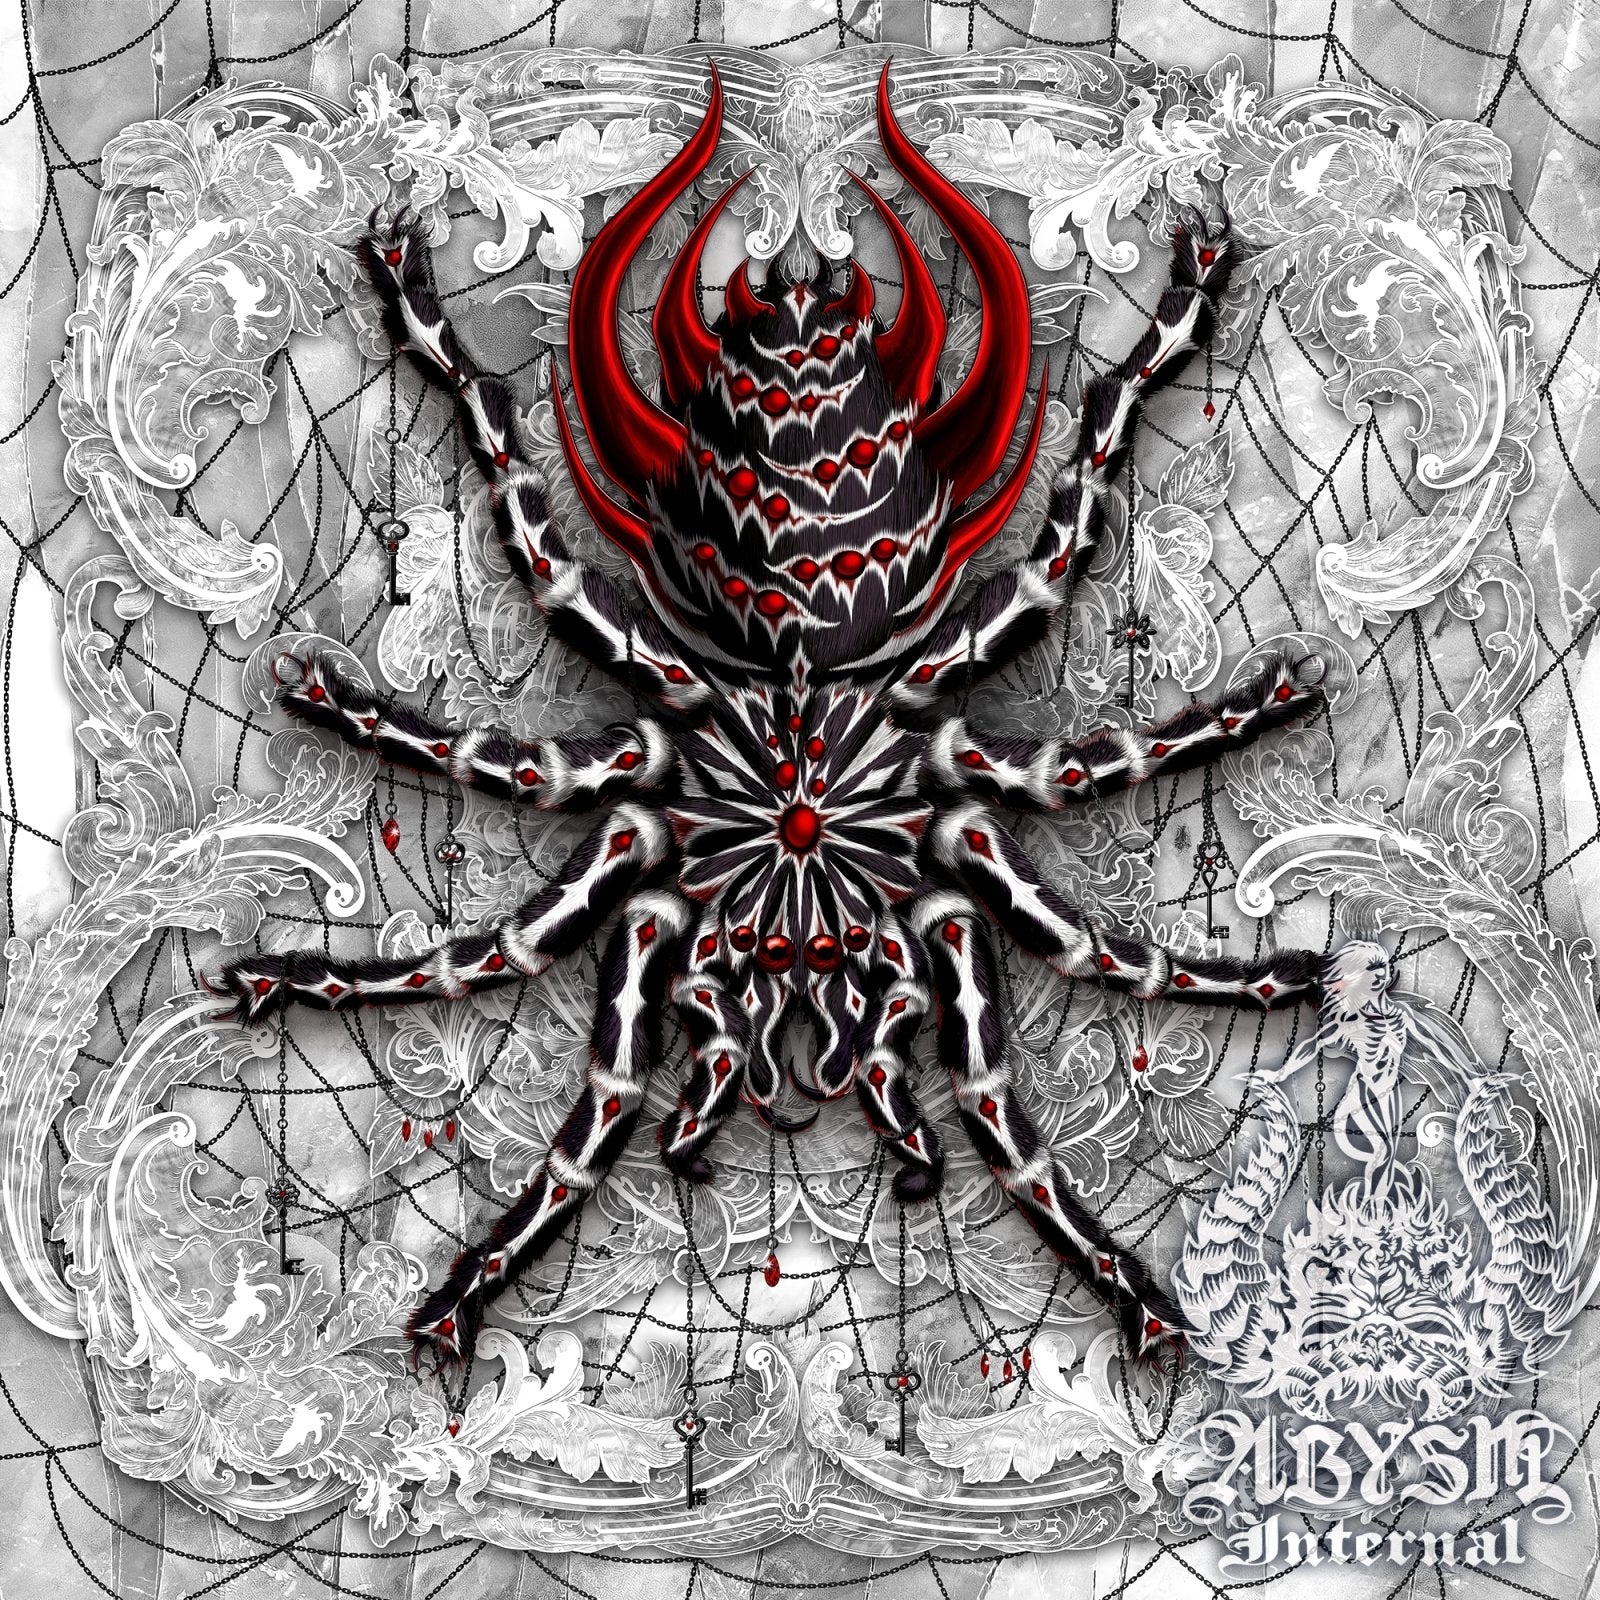 Spiders - Abysm Internal